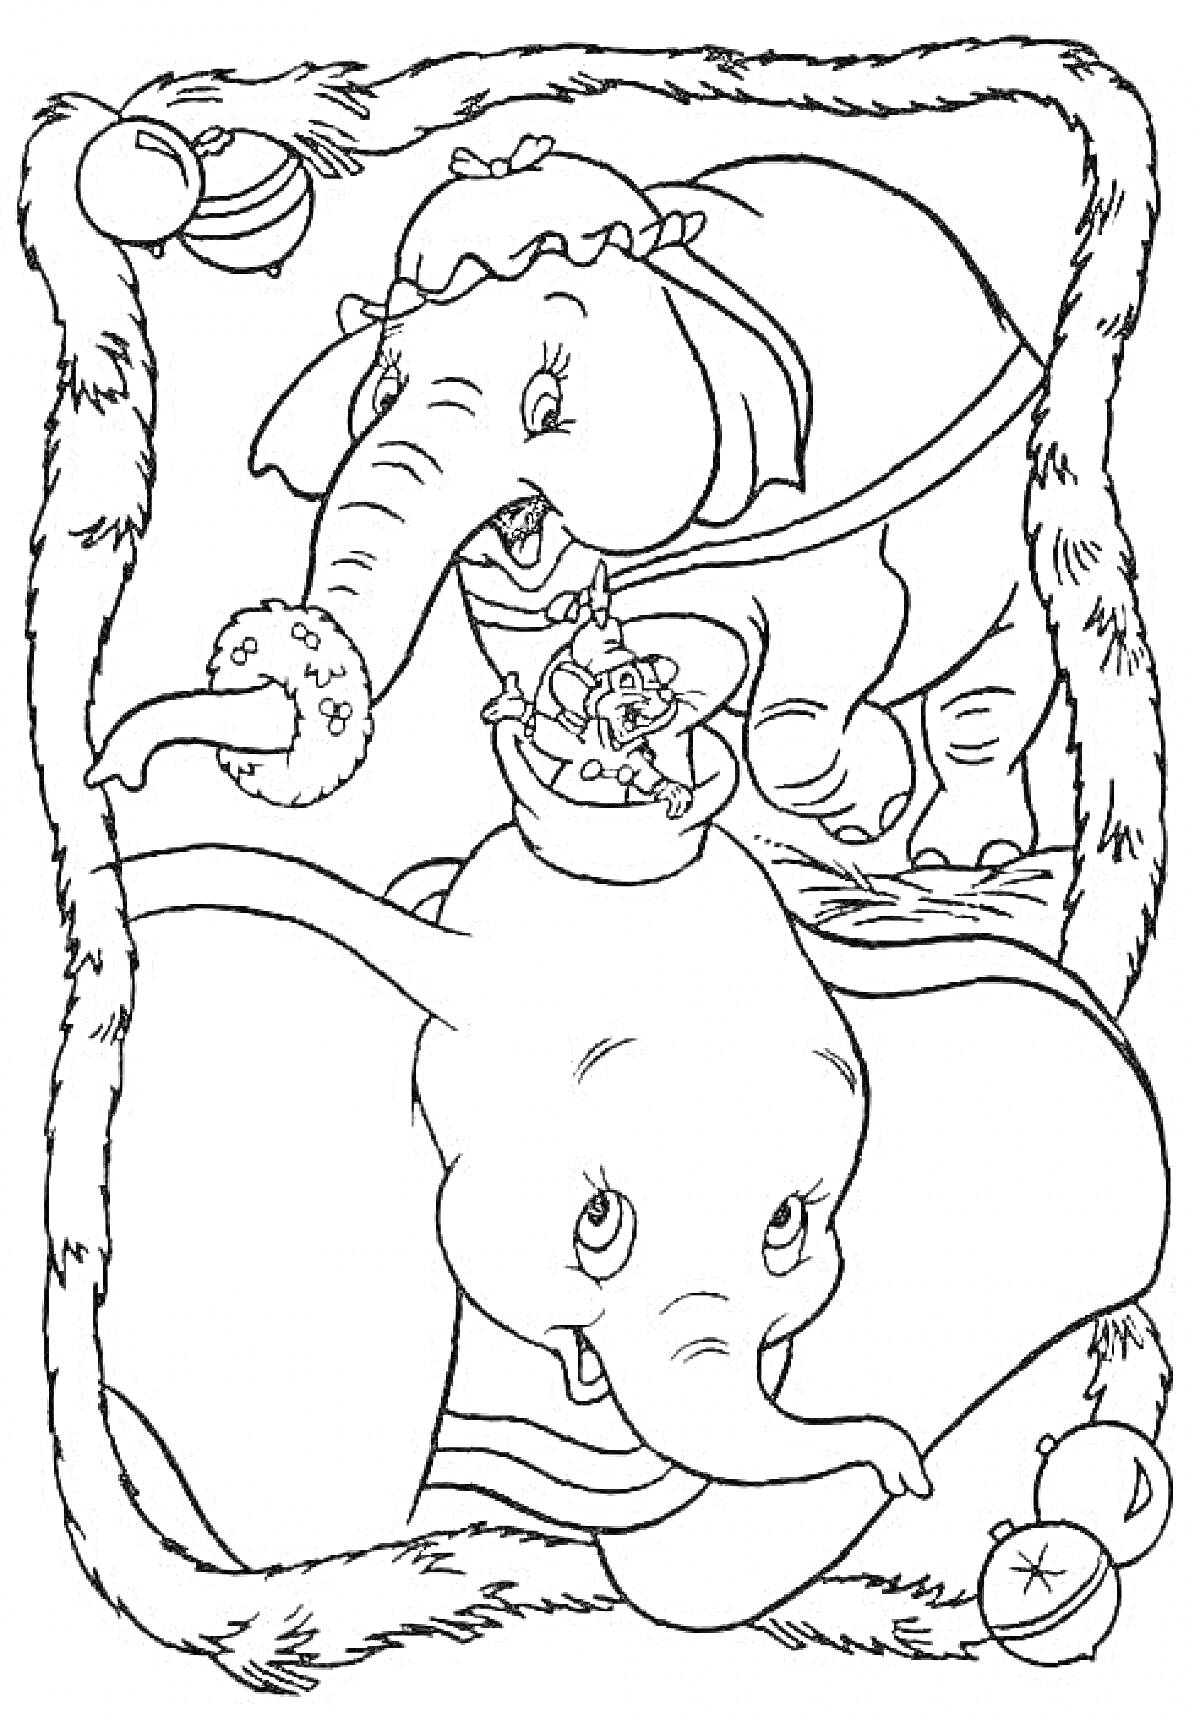 Раскраска Слоненок Дамбо и его мама с рождественскими украшениями и игрушками